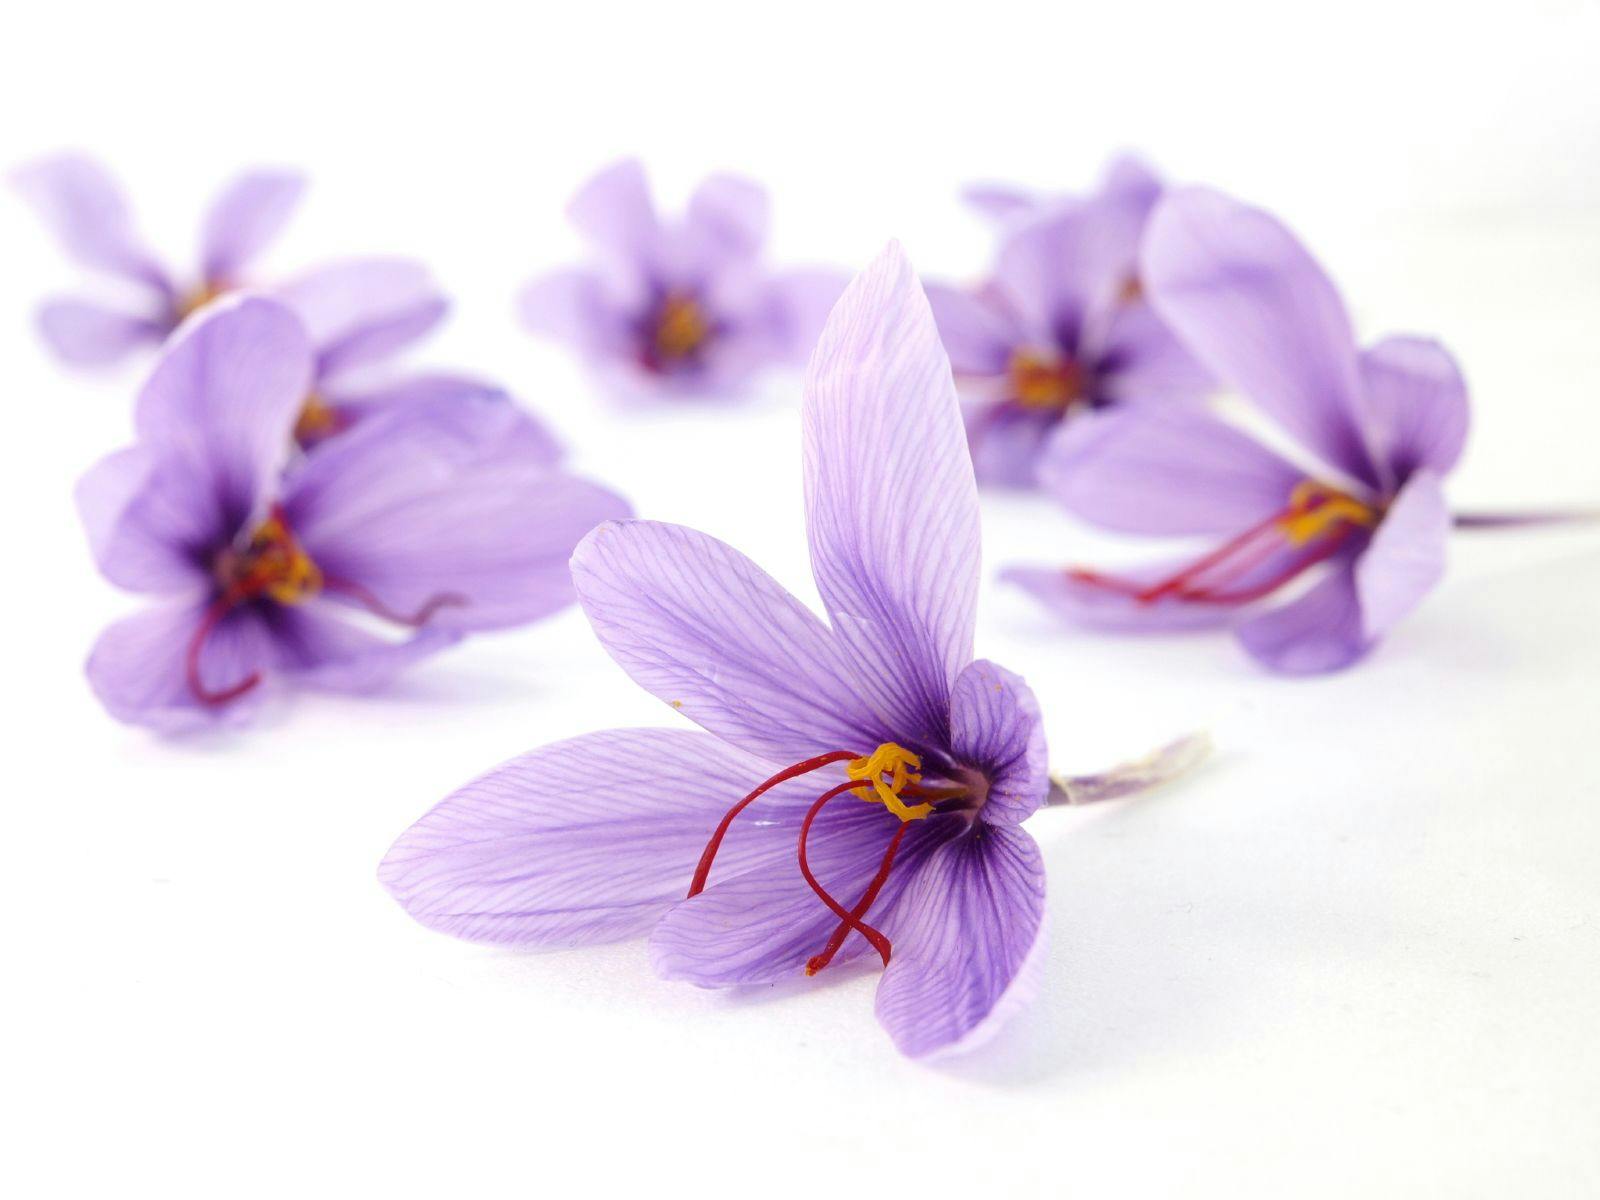 six saffron flowers